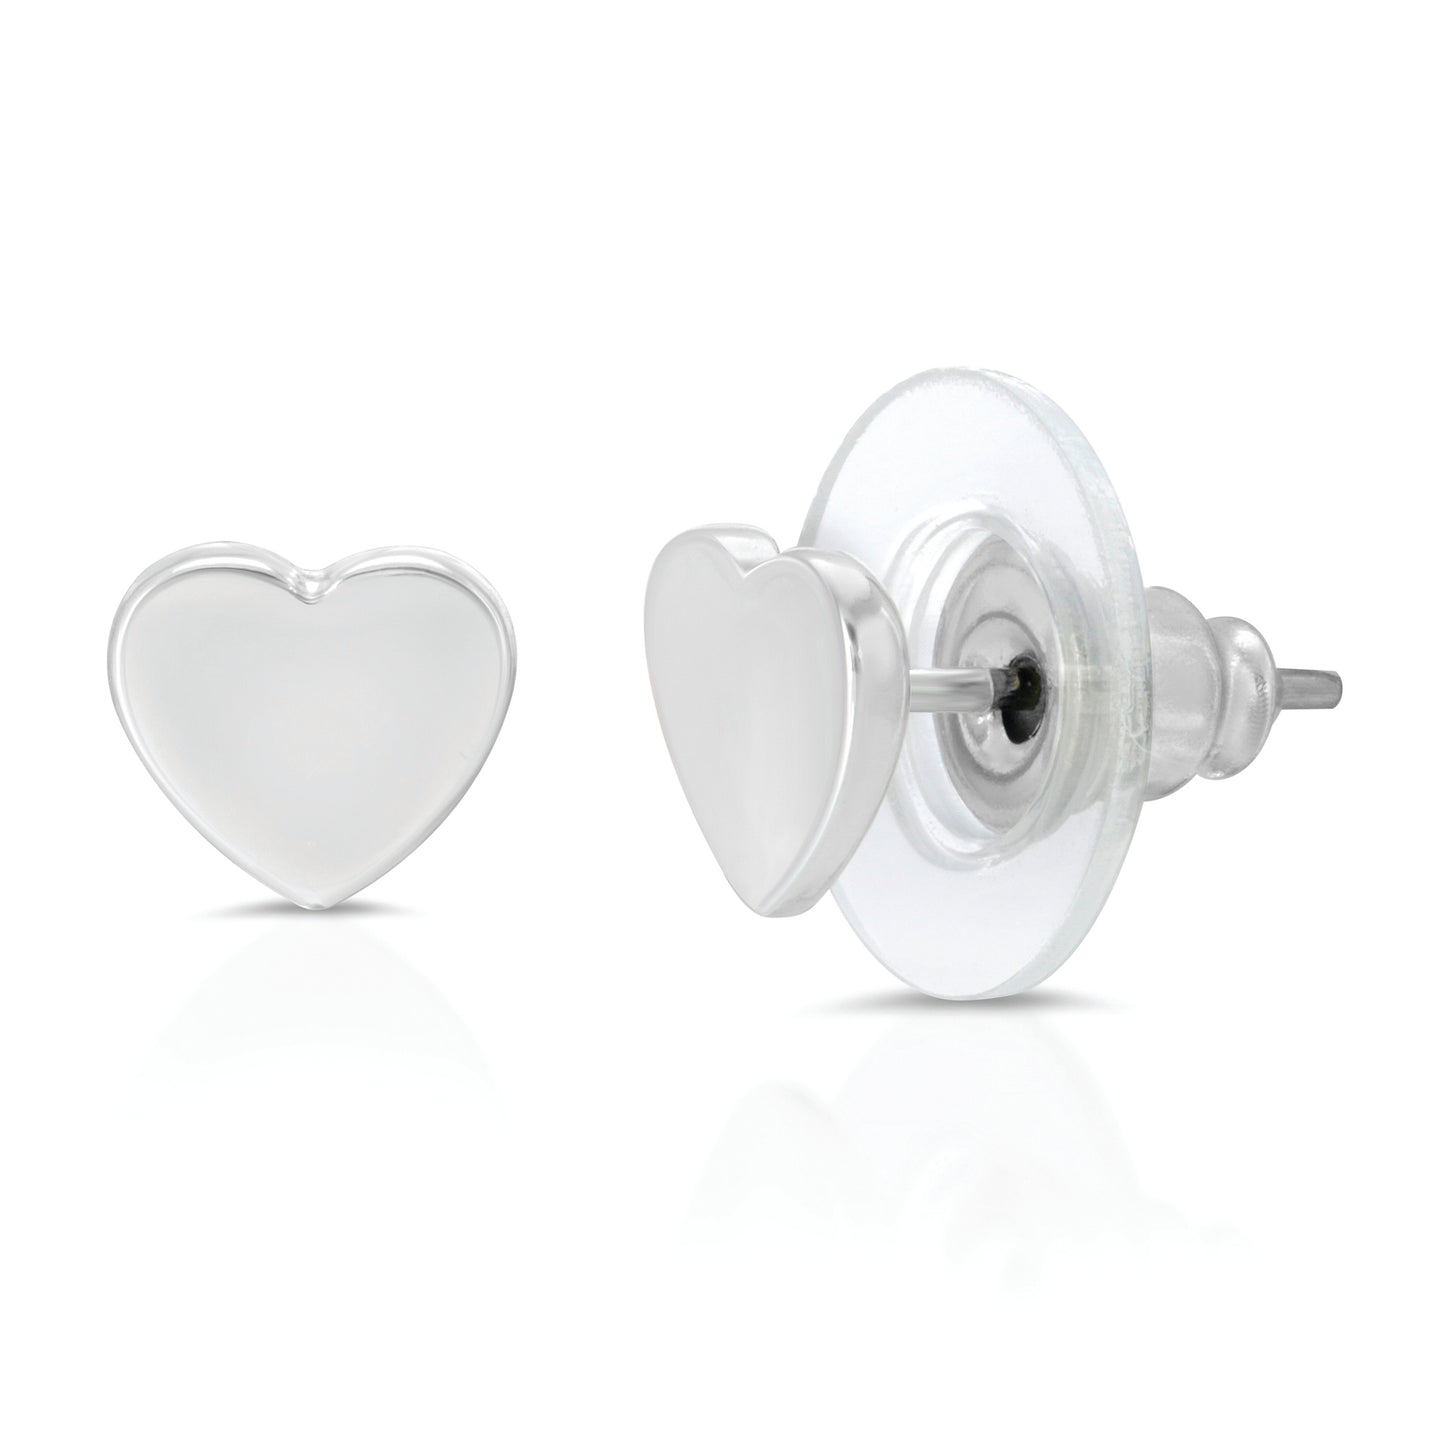 Love You Lots - Silver Heart Earrings